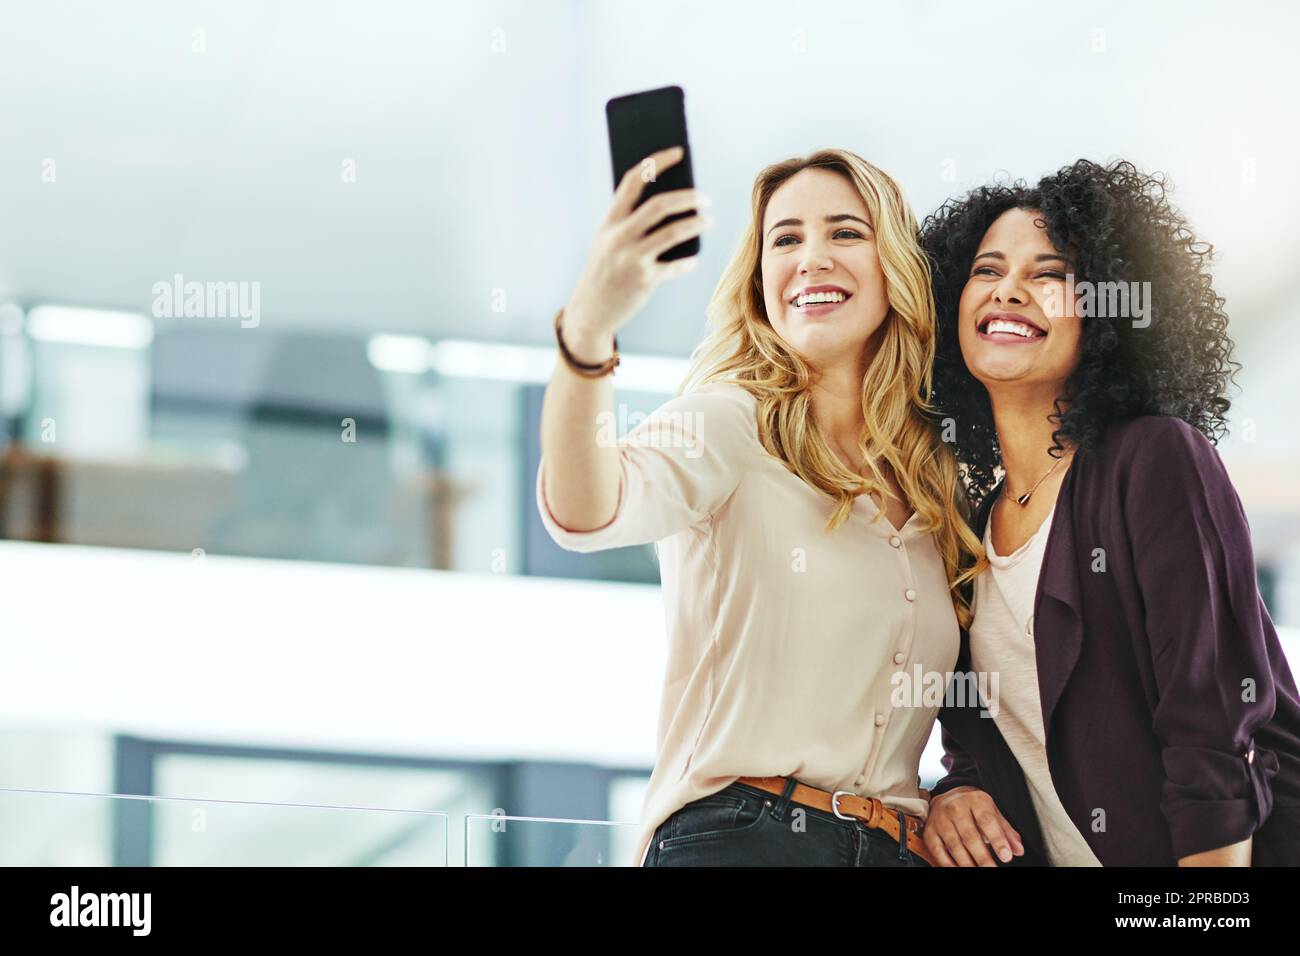 Mujeres felices, sonrientes y alegres tomando selfies con un teléfono mientras se unen, se divierten y se despreocupan en el trabajo. Colegas diversos, alegres y positivos que toman fotos para las redes sociales Foto de stock